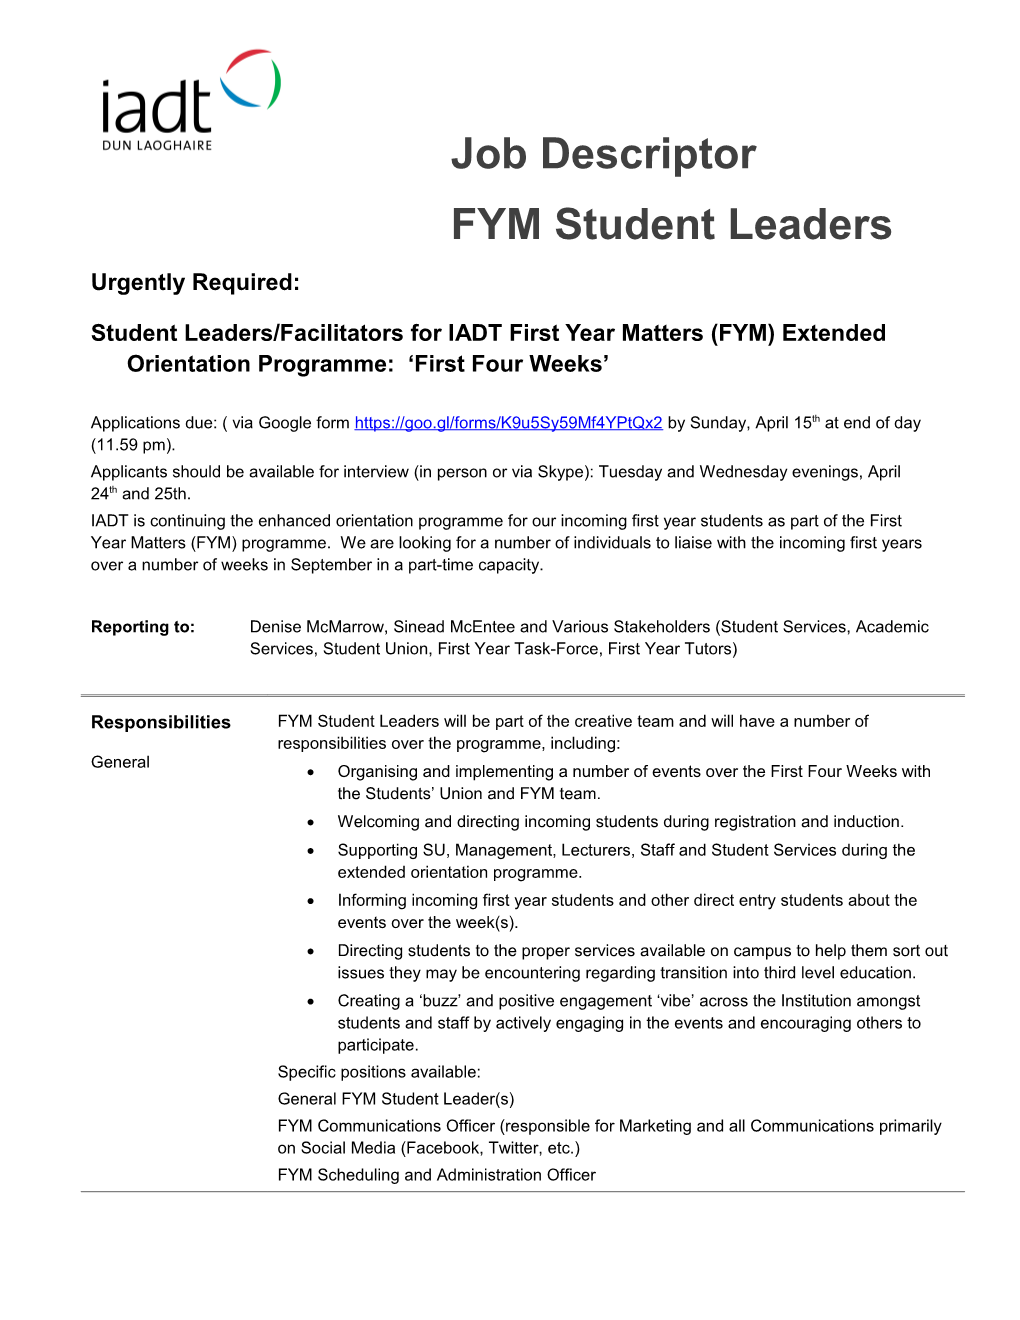 FYM Student Leaders